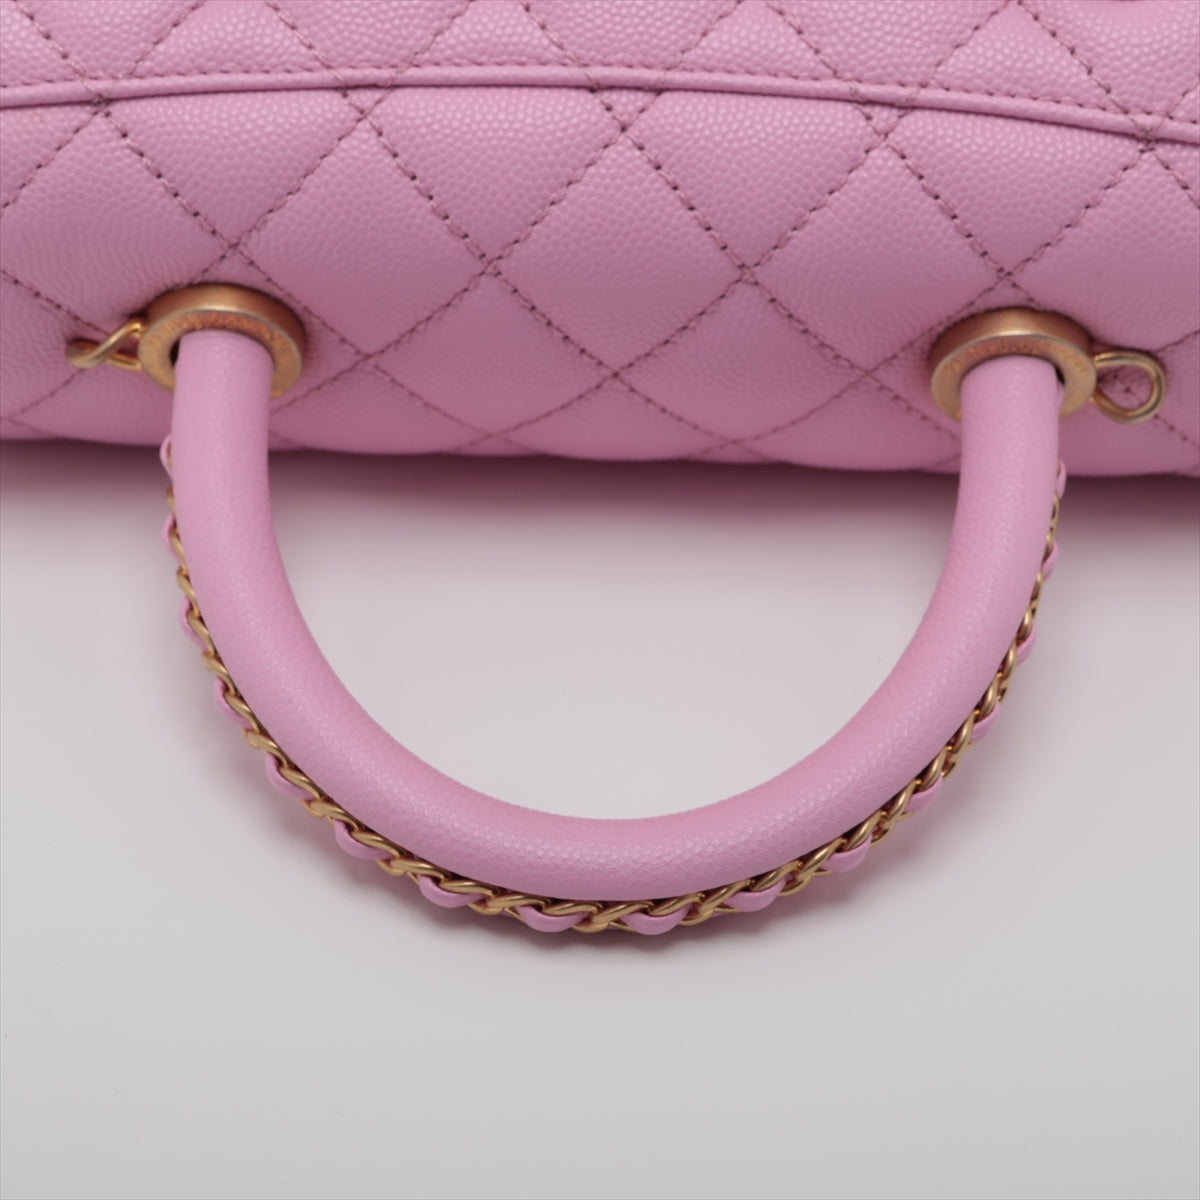 Chanel Coco Handle 24 XS Caviar S 2WAY Handbag Pink Gold  A92990